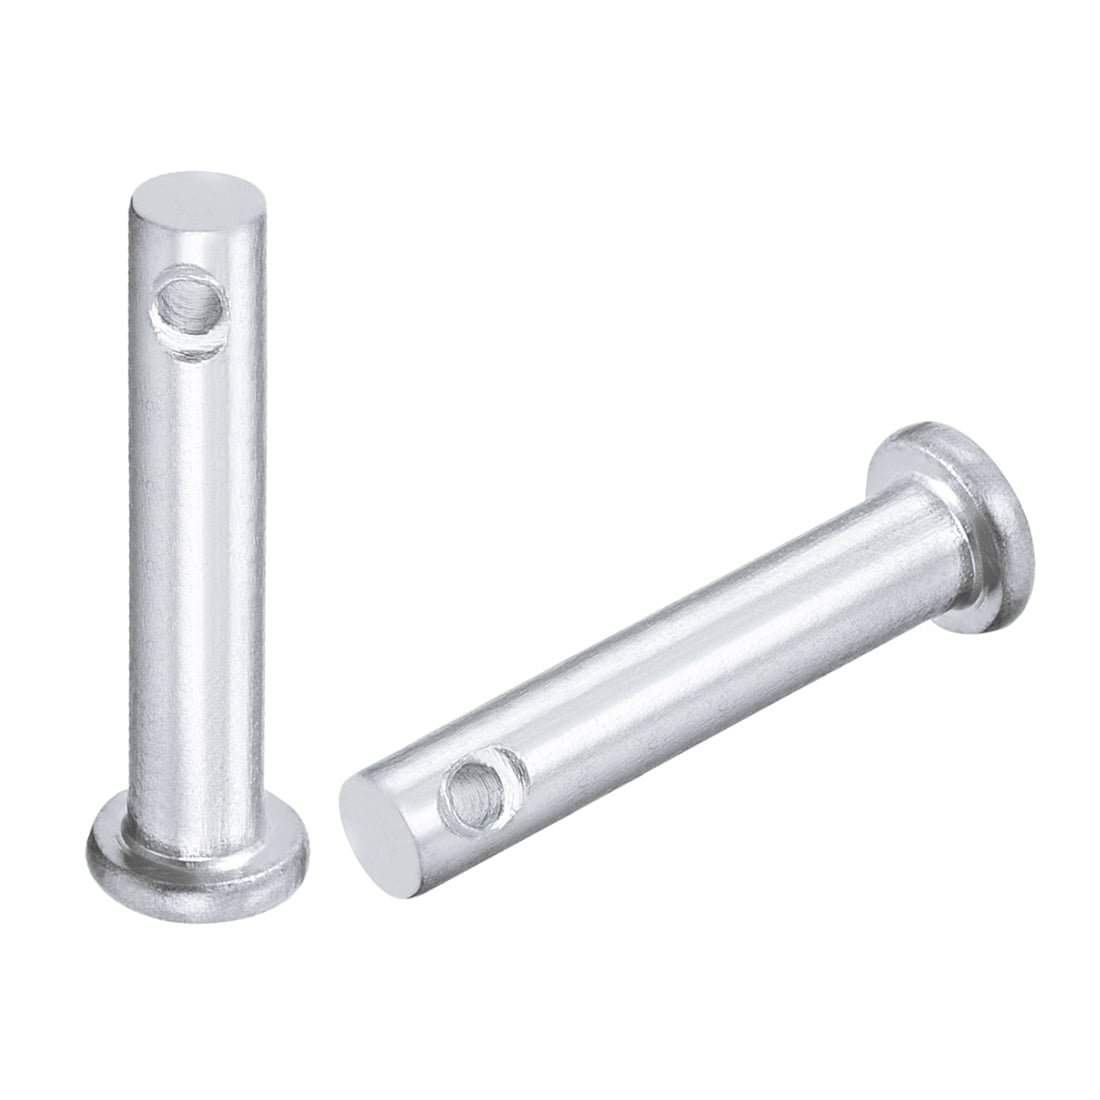 Single Hole Clevis Pins 6mm x 30mm Flat Head Zinc-Plating Solid Steel Pin 30Pcs 